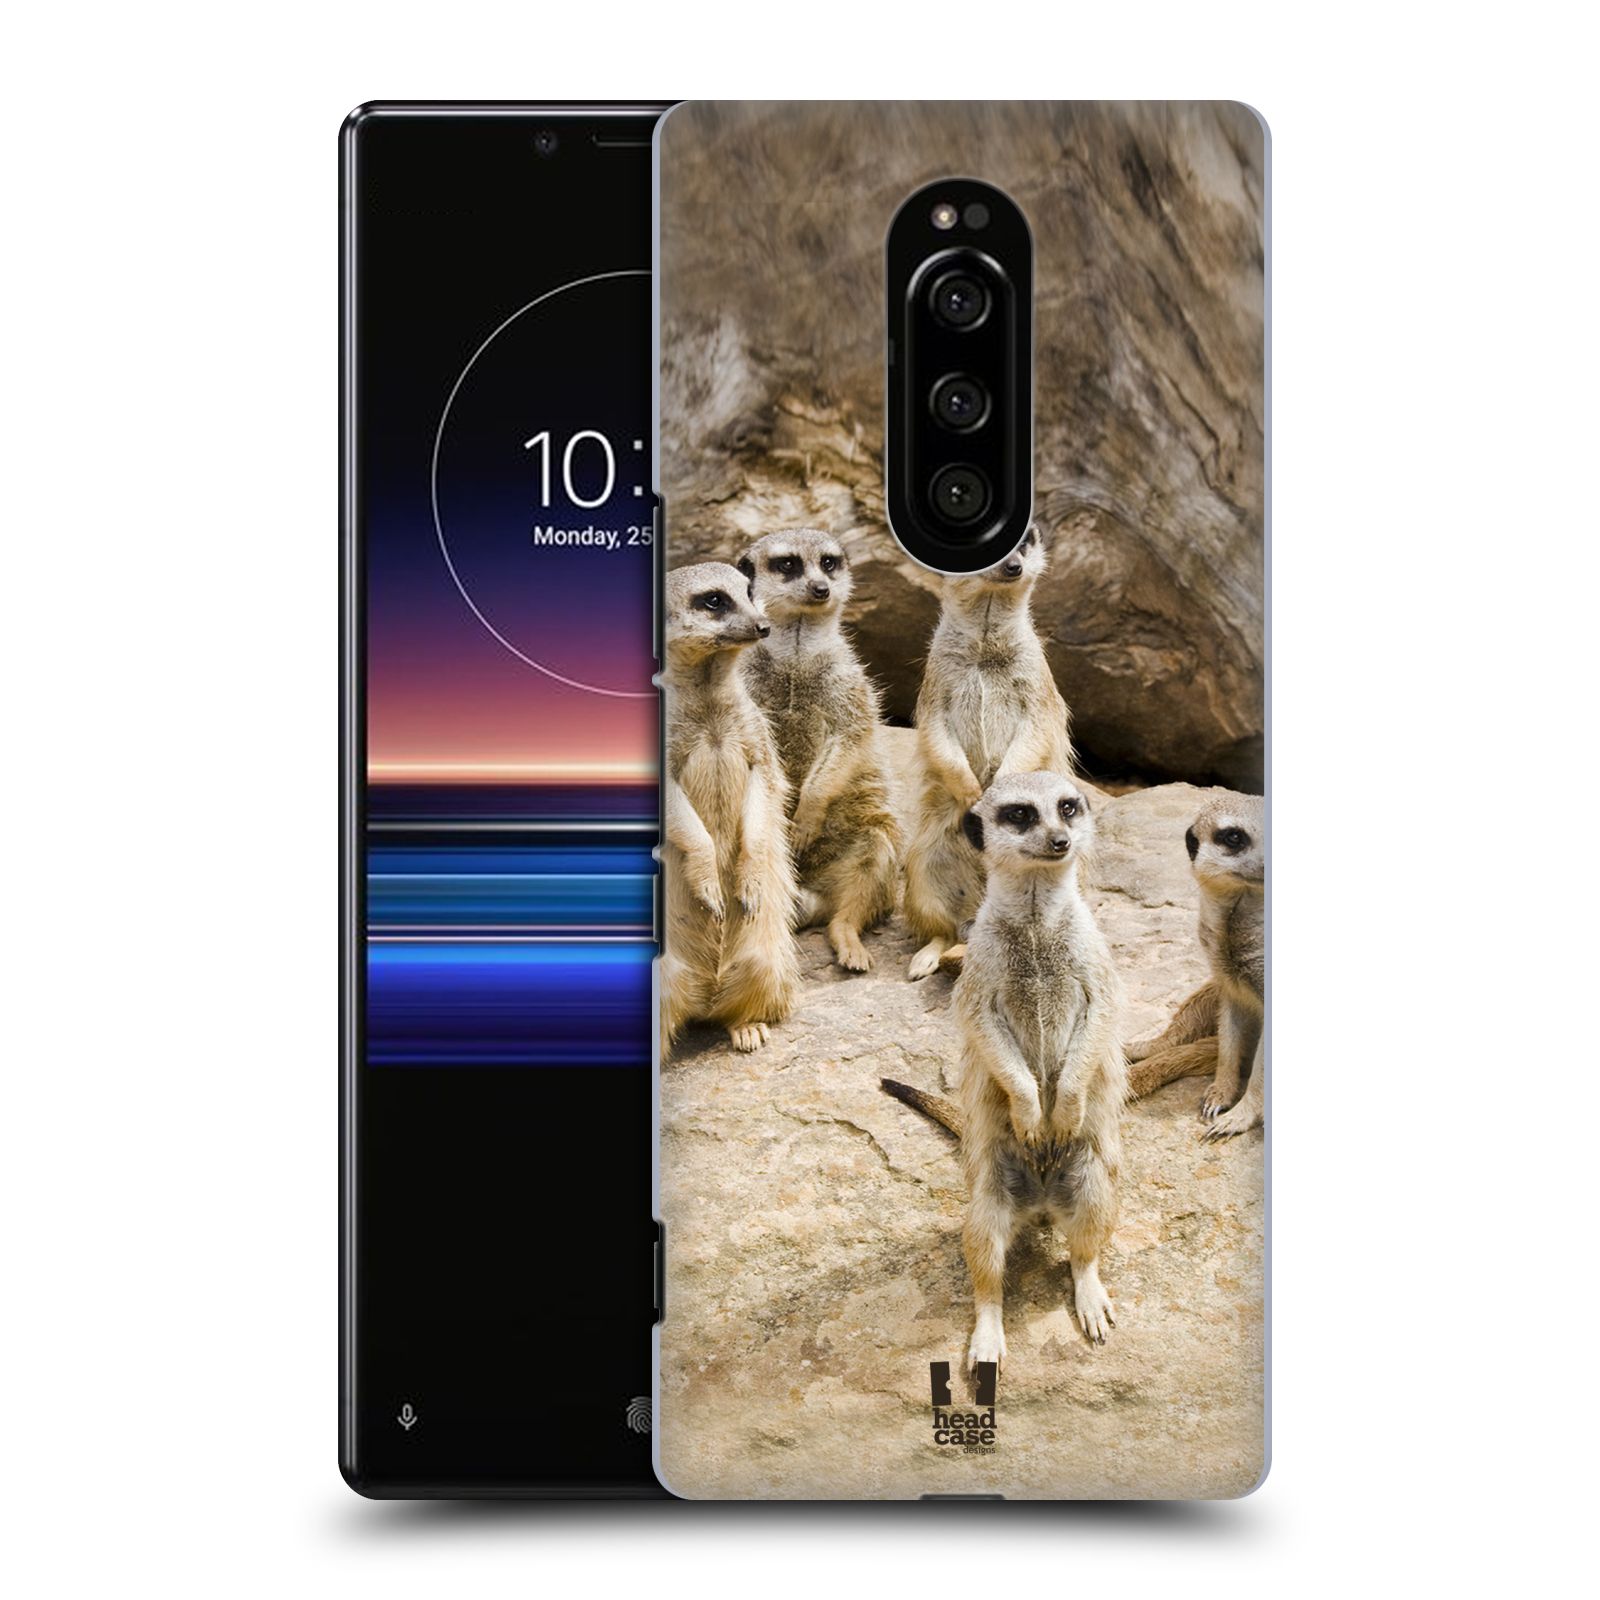 Zadní obal pro mobil Sony Xperia 1 - HEAD CASE - Svět zvířat roztomilé surikaty